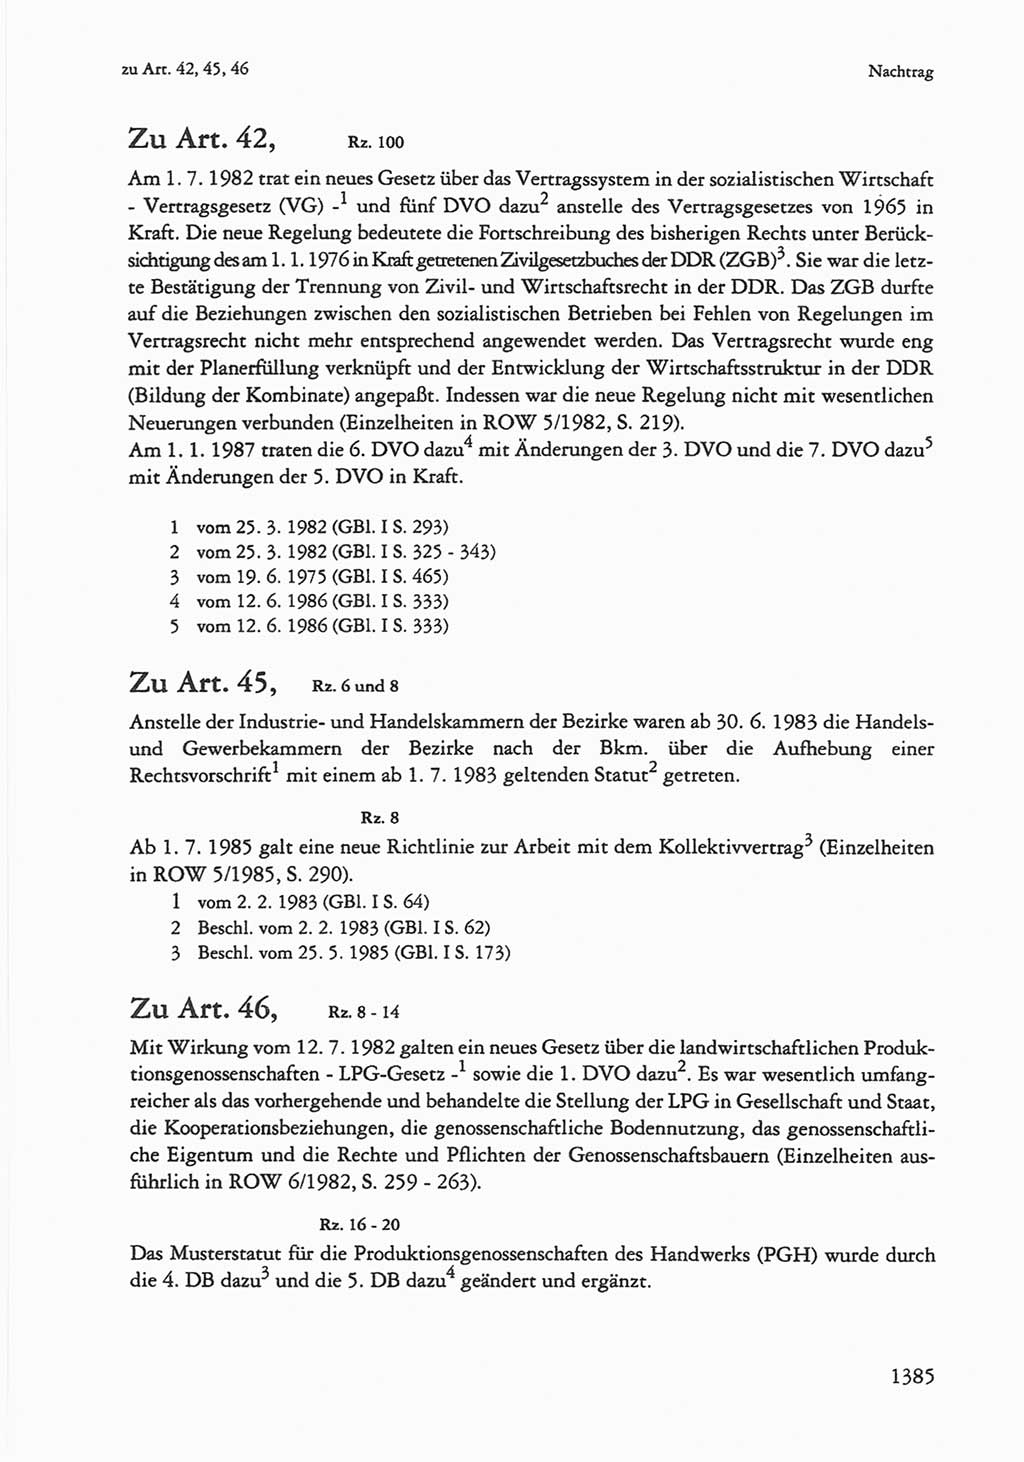 Die sozialistische Verfassung der Deutschen Demokratischen Republik (DDR), Kommentar mit einem Nachtrag 1997, Seite 1385 (Soz. Verf. DDR Komm. Nachtr. 1997, S. 1385)